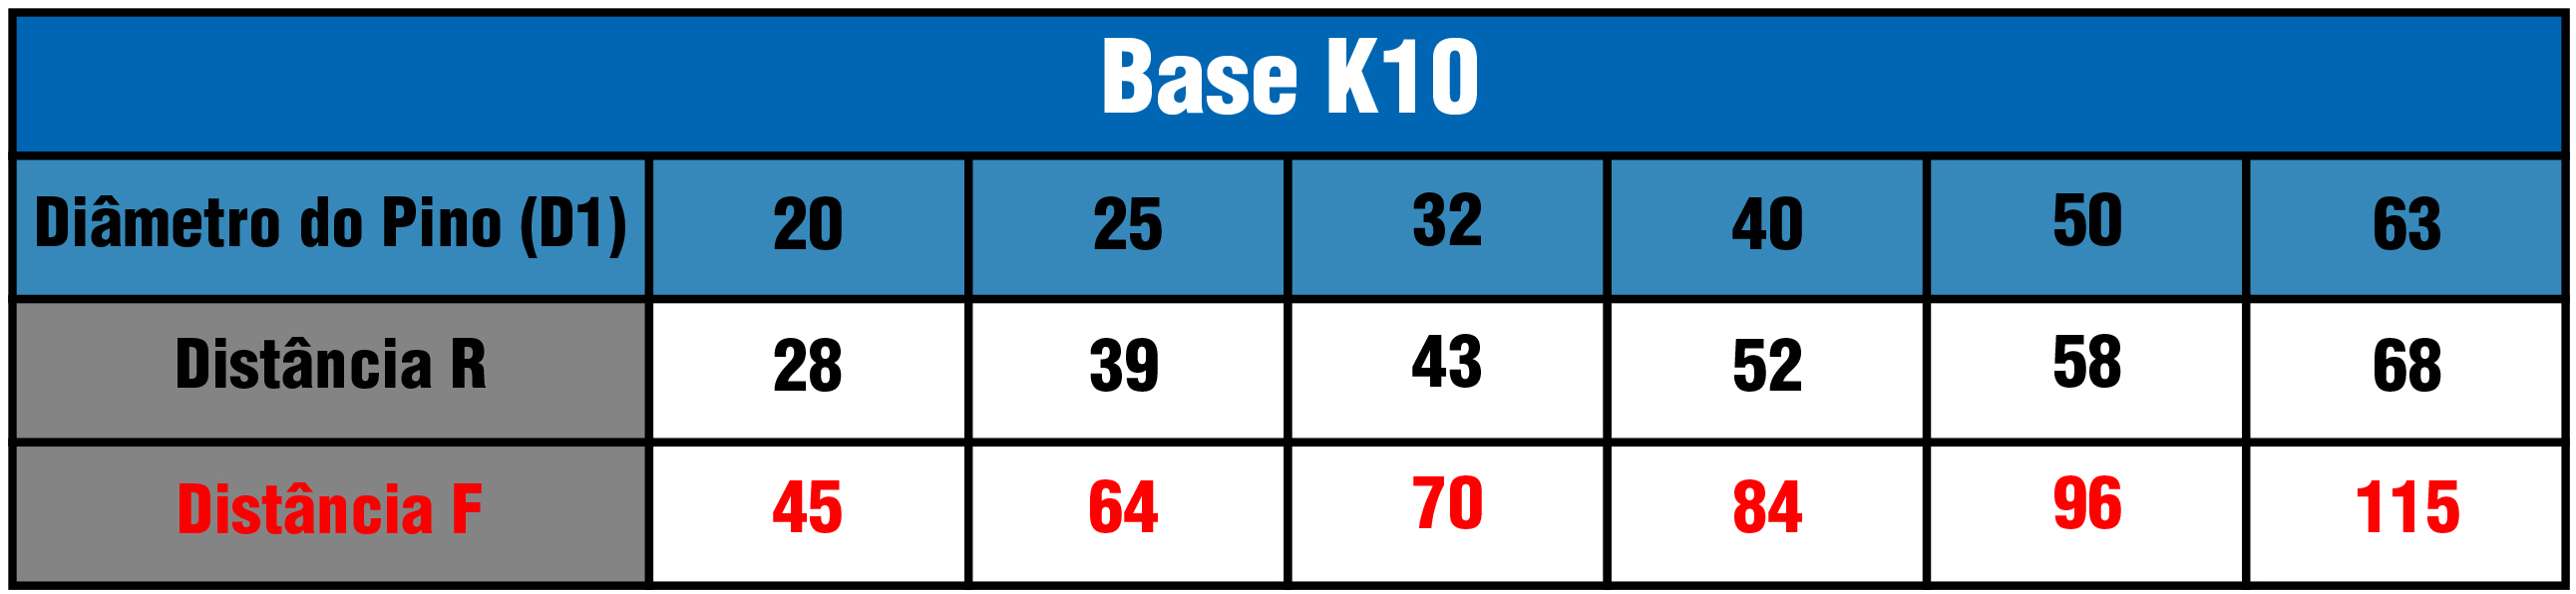 Tabela Base K10